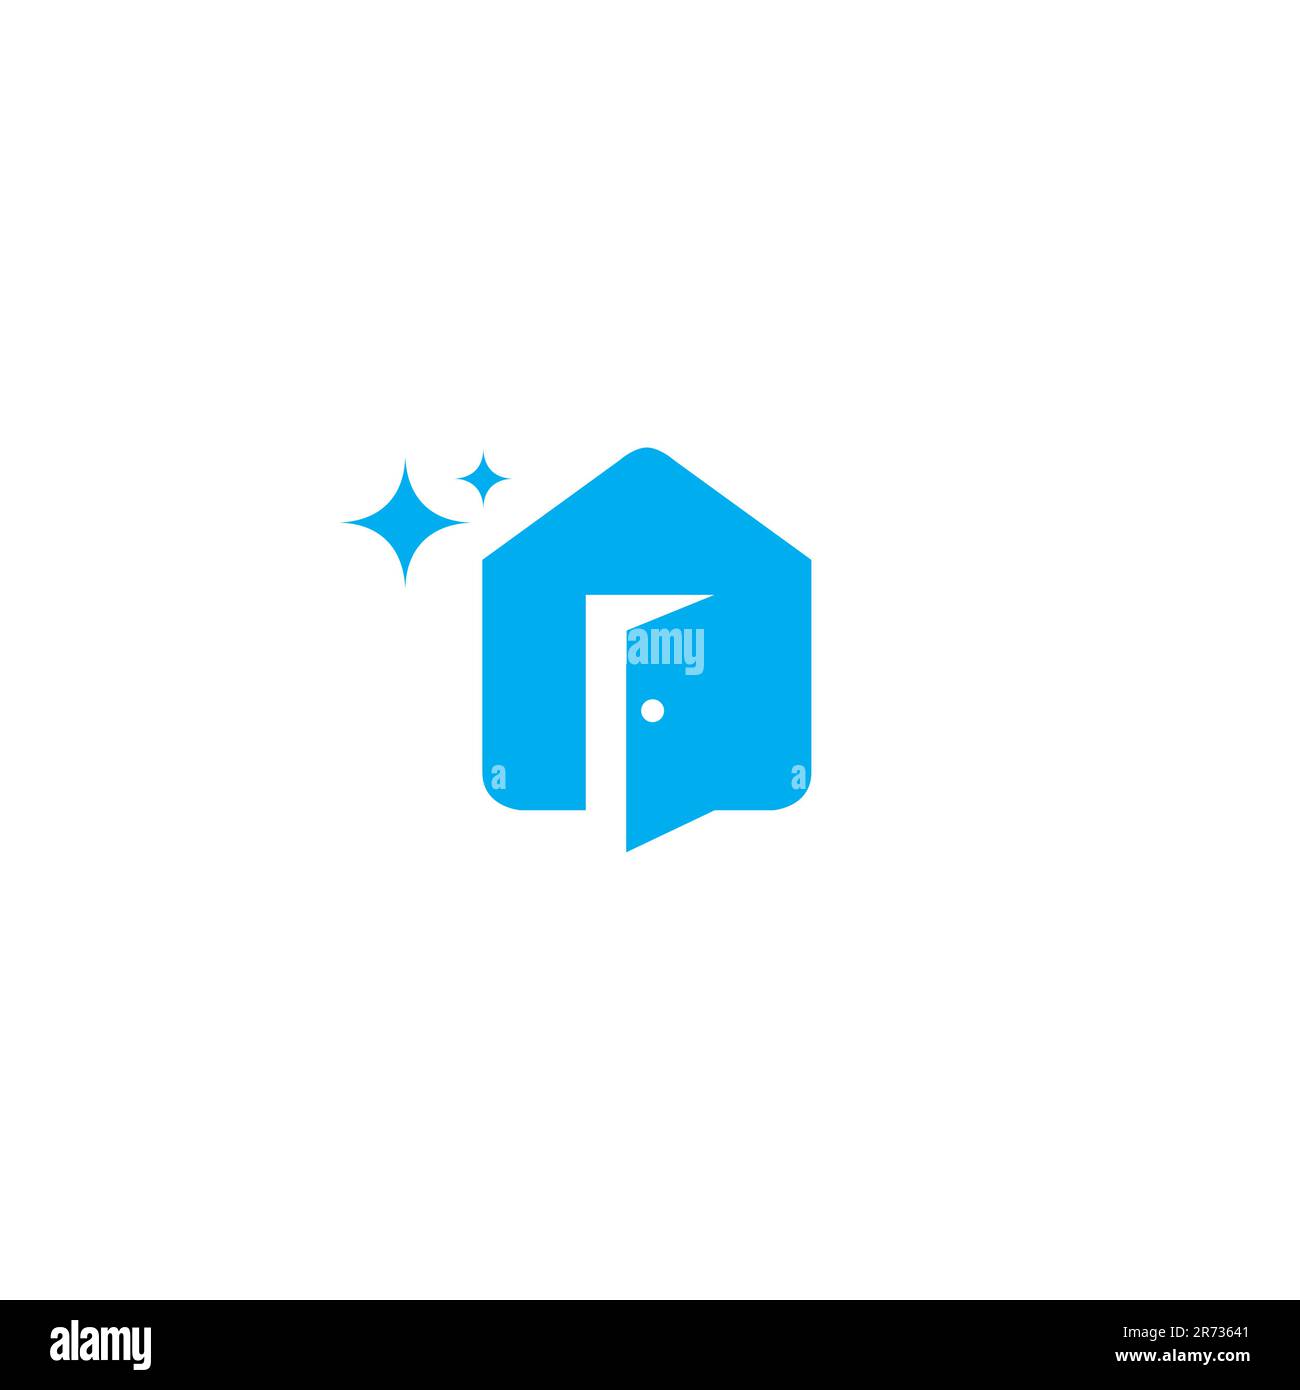 Öffne die Tür des House Clean Logos. Home Clean Logo Stock Vektor